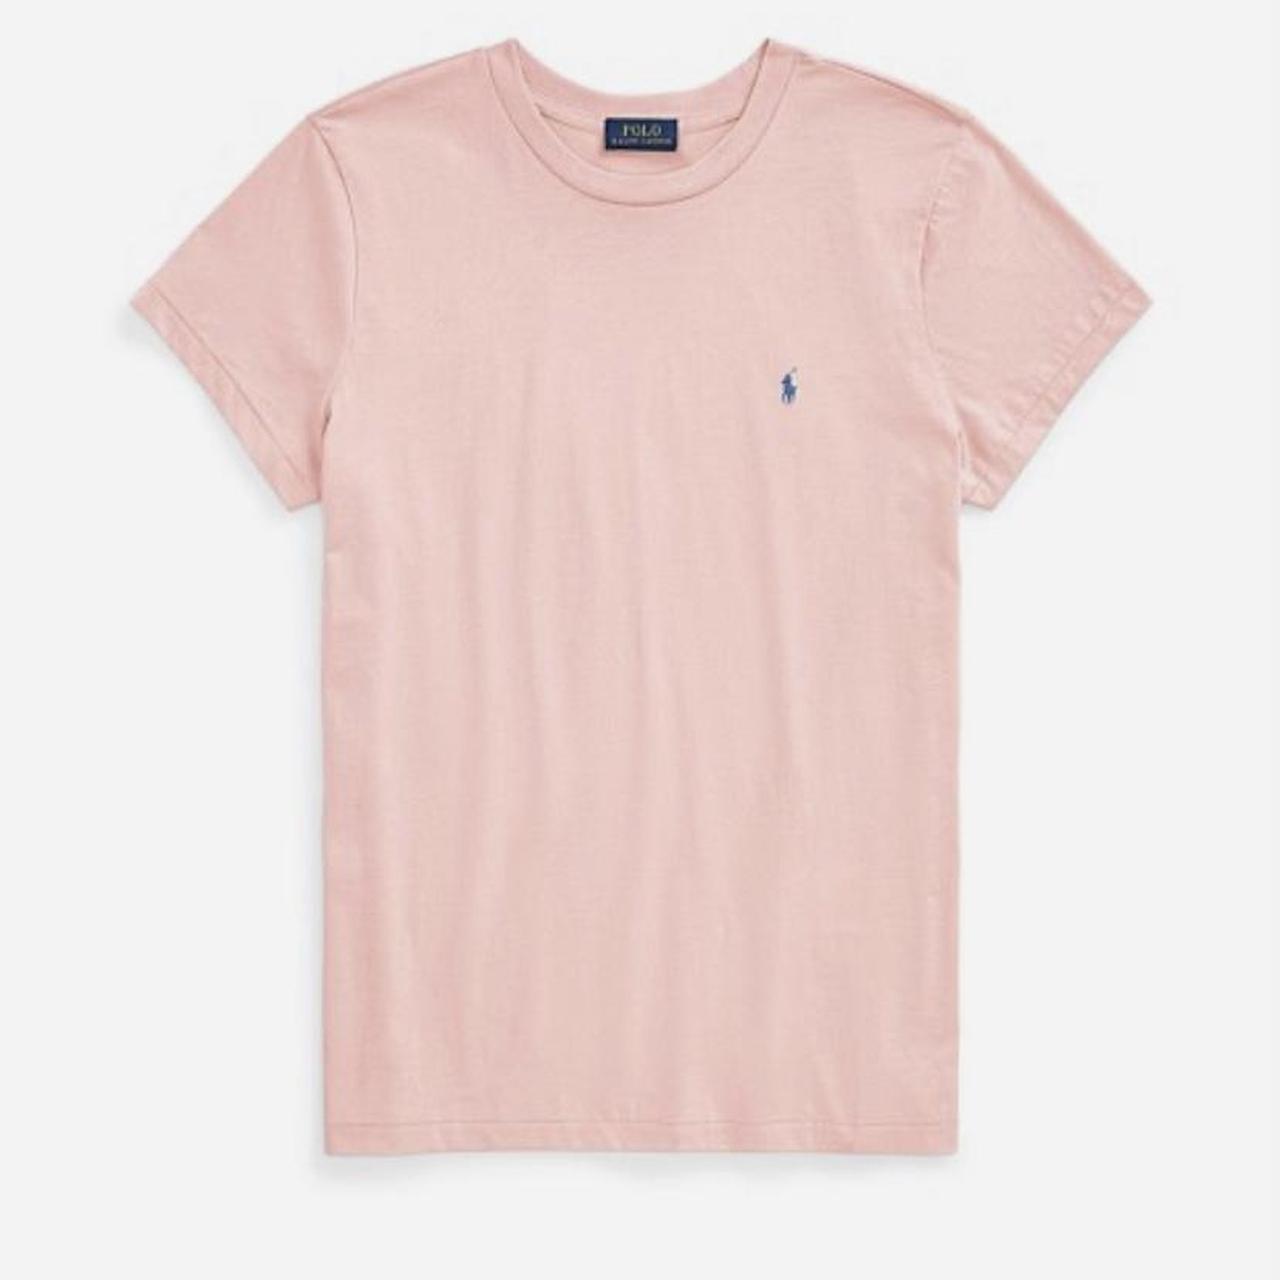 Polo Ralph Lauren pink cotton t-shirt size small... - Depop